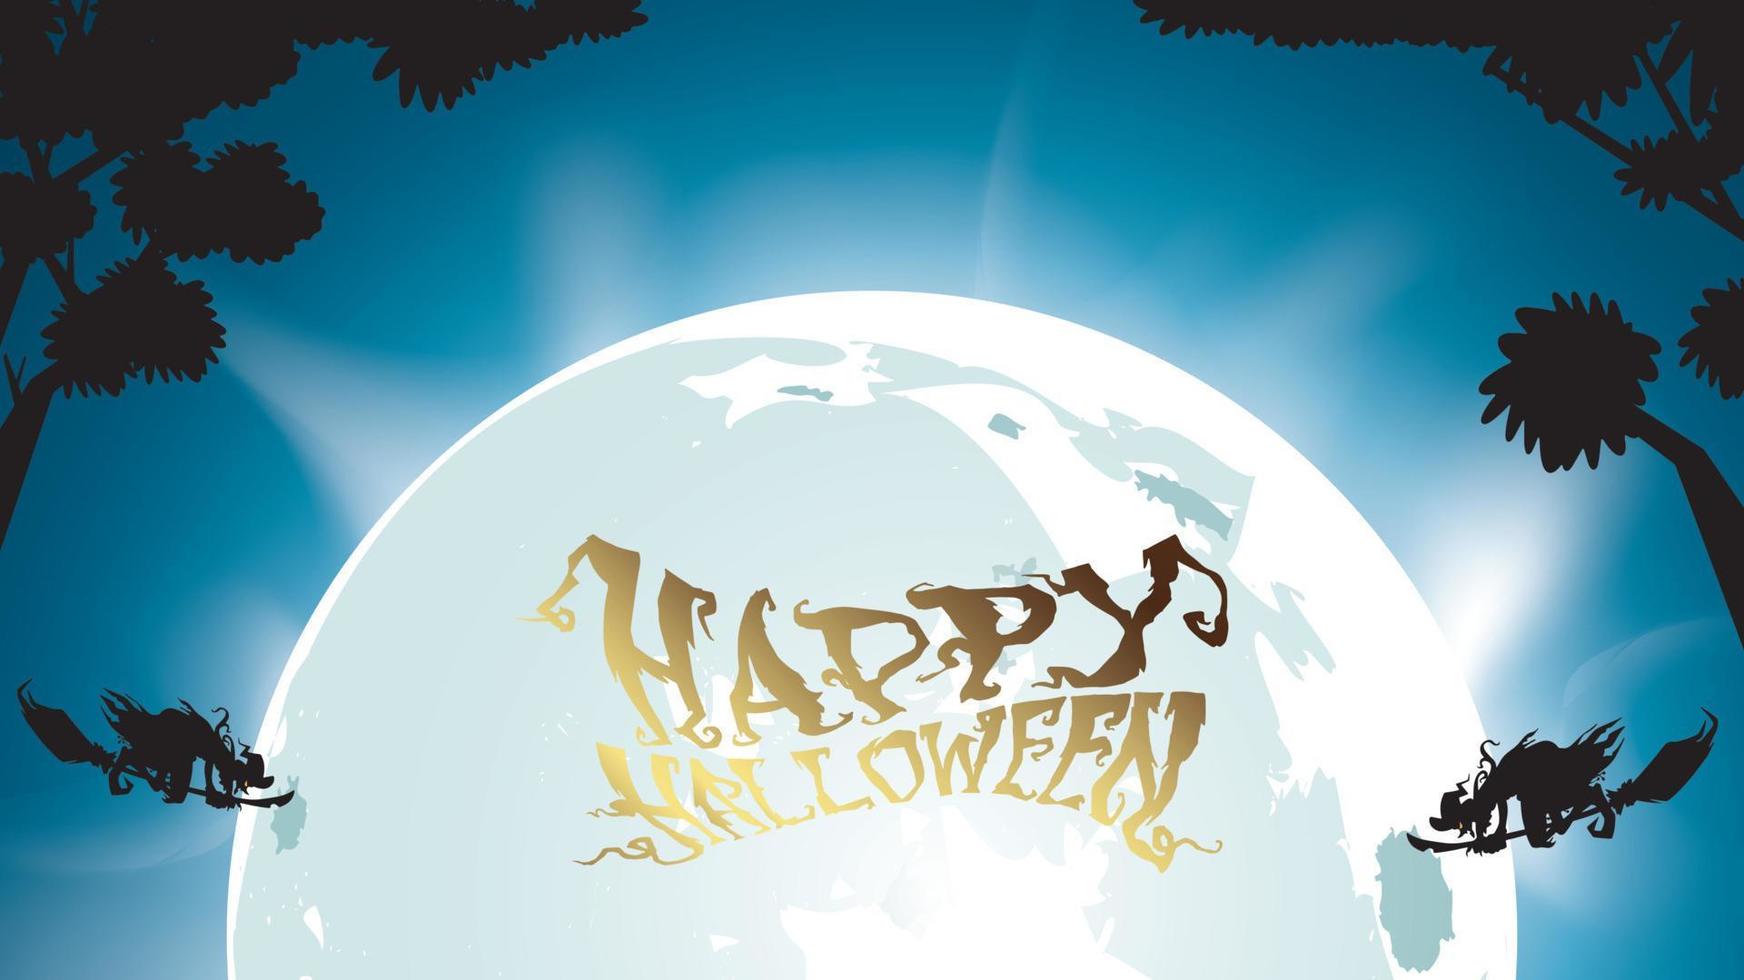 donkere gelukkige halloween en heksenvlieg met maan op blauwe hemelillustratie. flyer of uitnodigingssjabloon voor banner, feest, uitnodiging. vectorillustratie met plaats voor uw tekst en kopieer ruimte vector